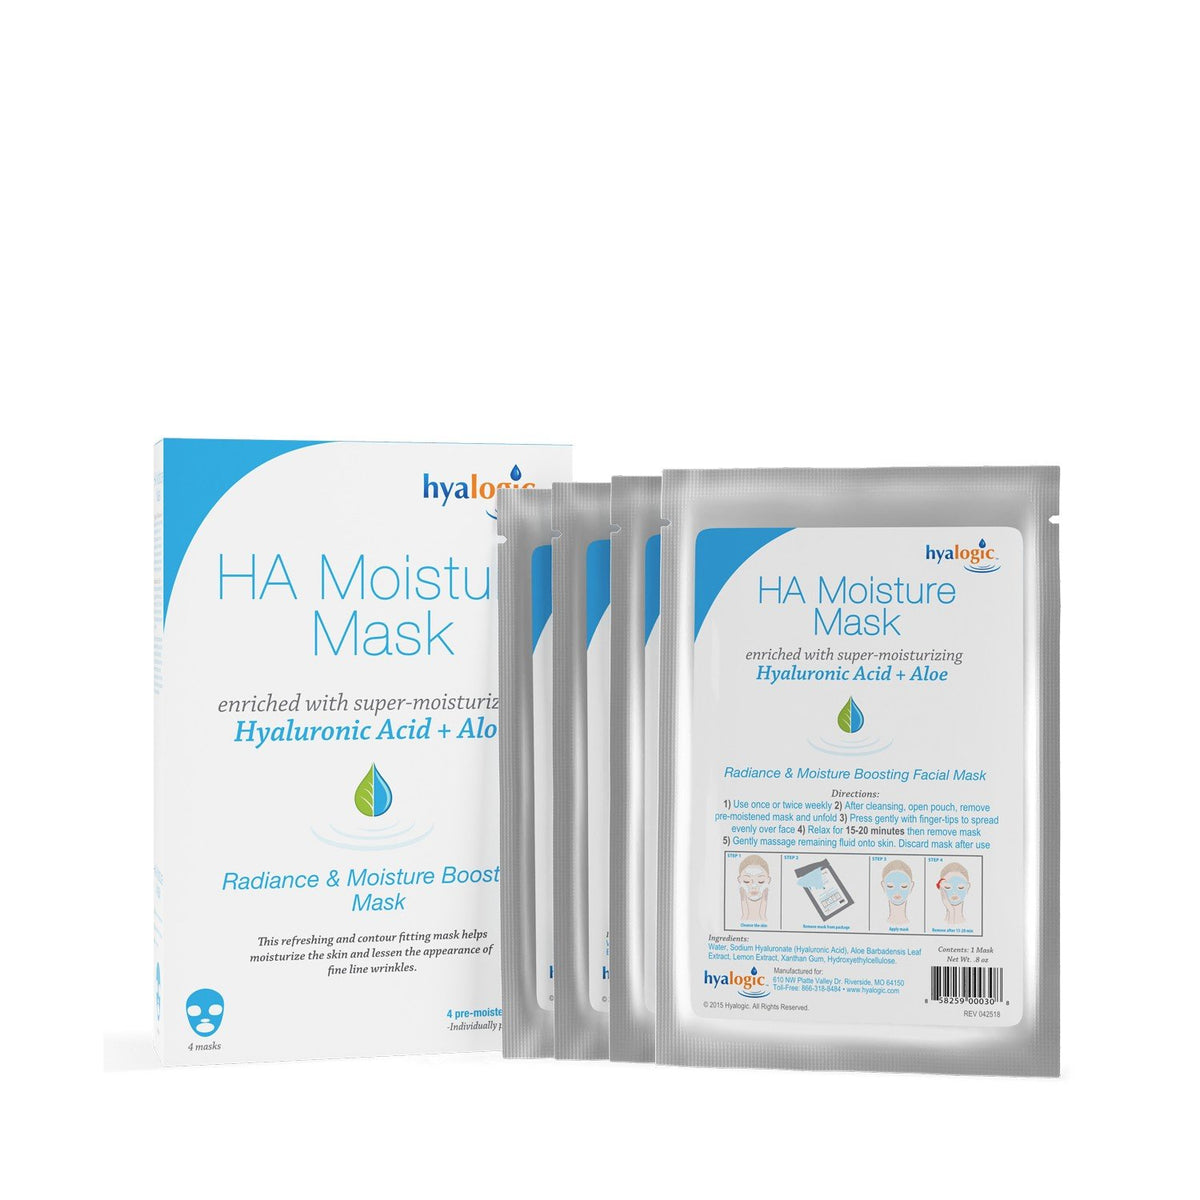 Hyalogic HA(Hyaluronic Acid + Aloe)Moisture Mask-4 pack Box 4 pack Box